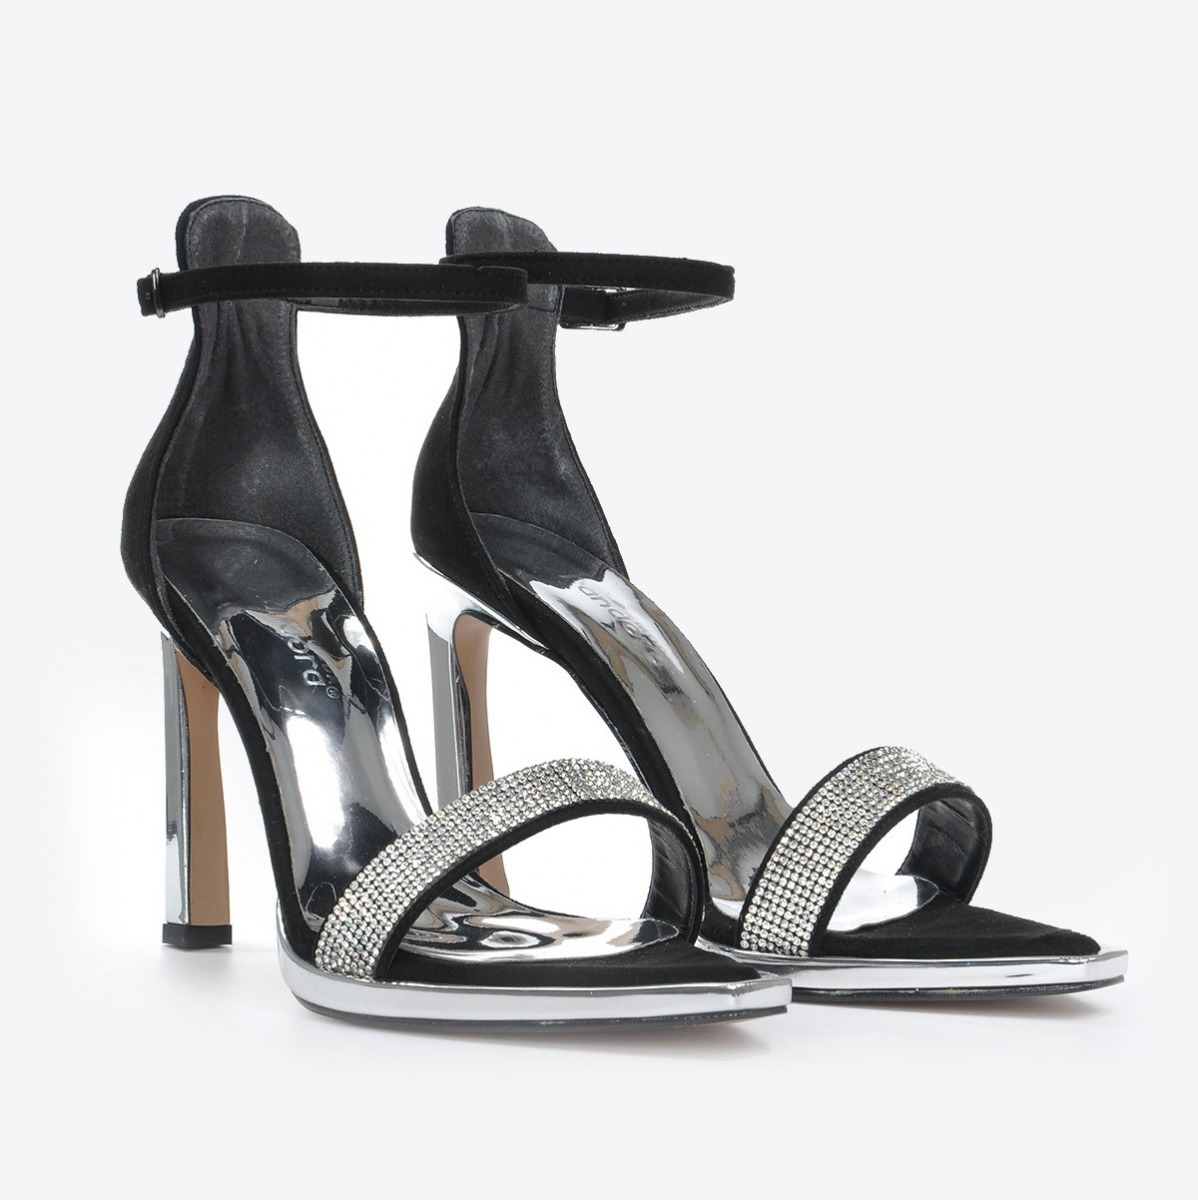 Flo Kadın Siyah Süet Klasik Topuklu Ayakkabı VZN20-179Y. 5